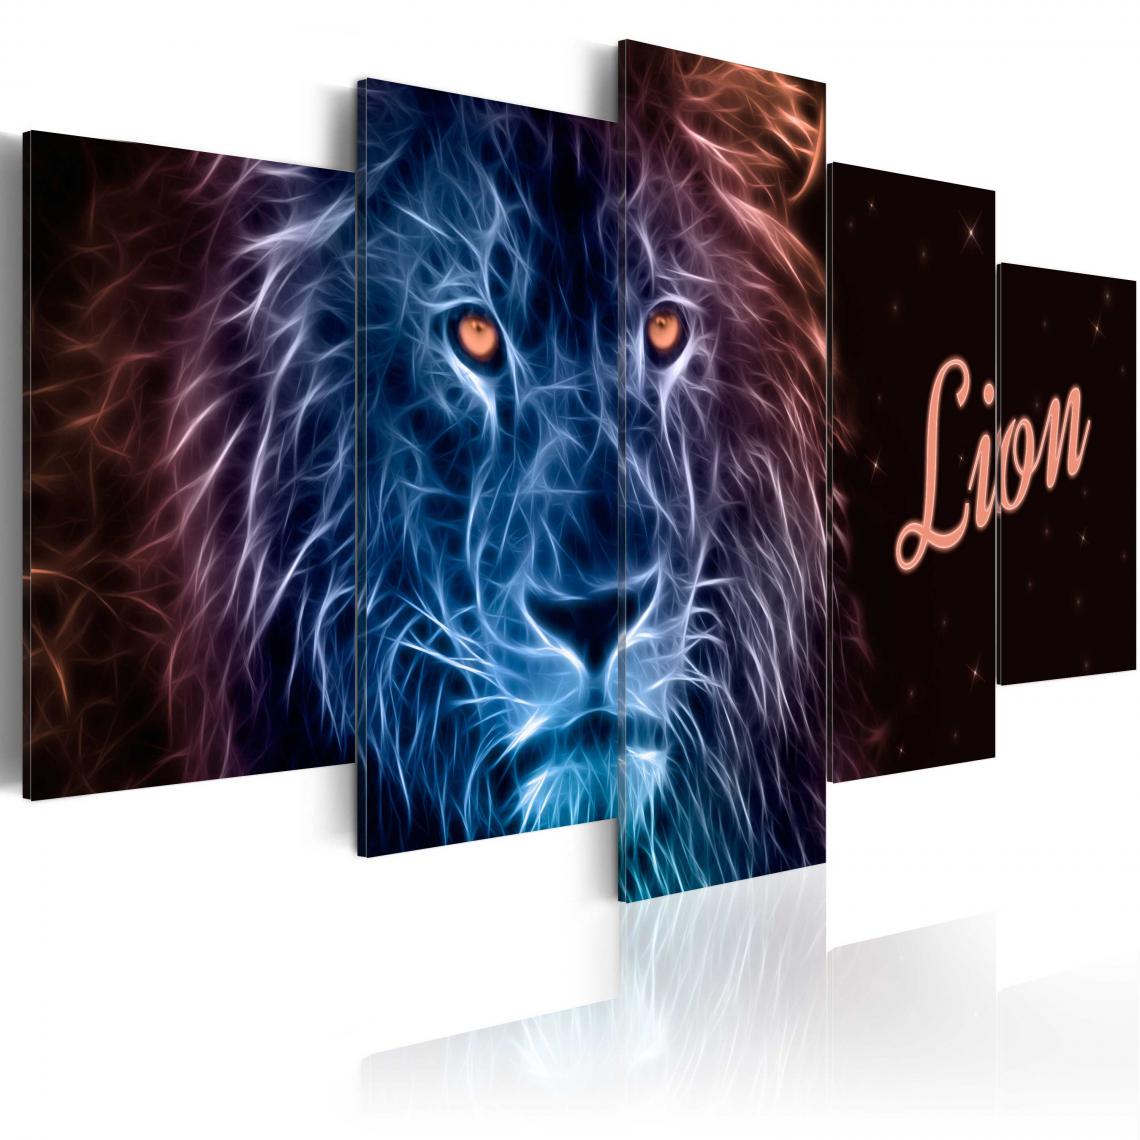 Decoshop26 - Tableau toile de décoration motif Royal flames lion 100x50cm DEC110973 - Tableaux, peintures